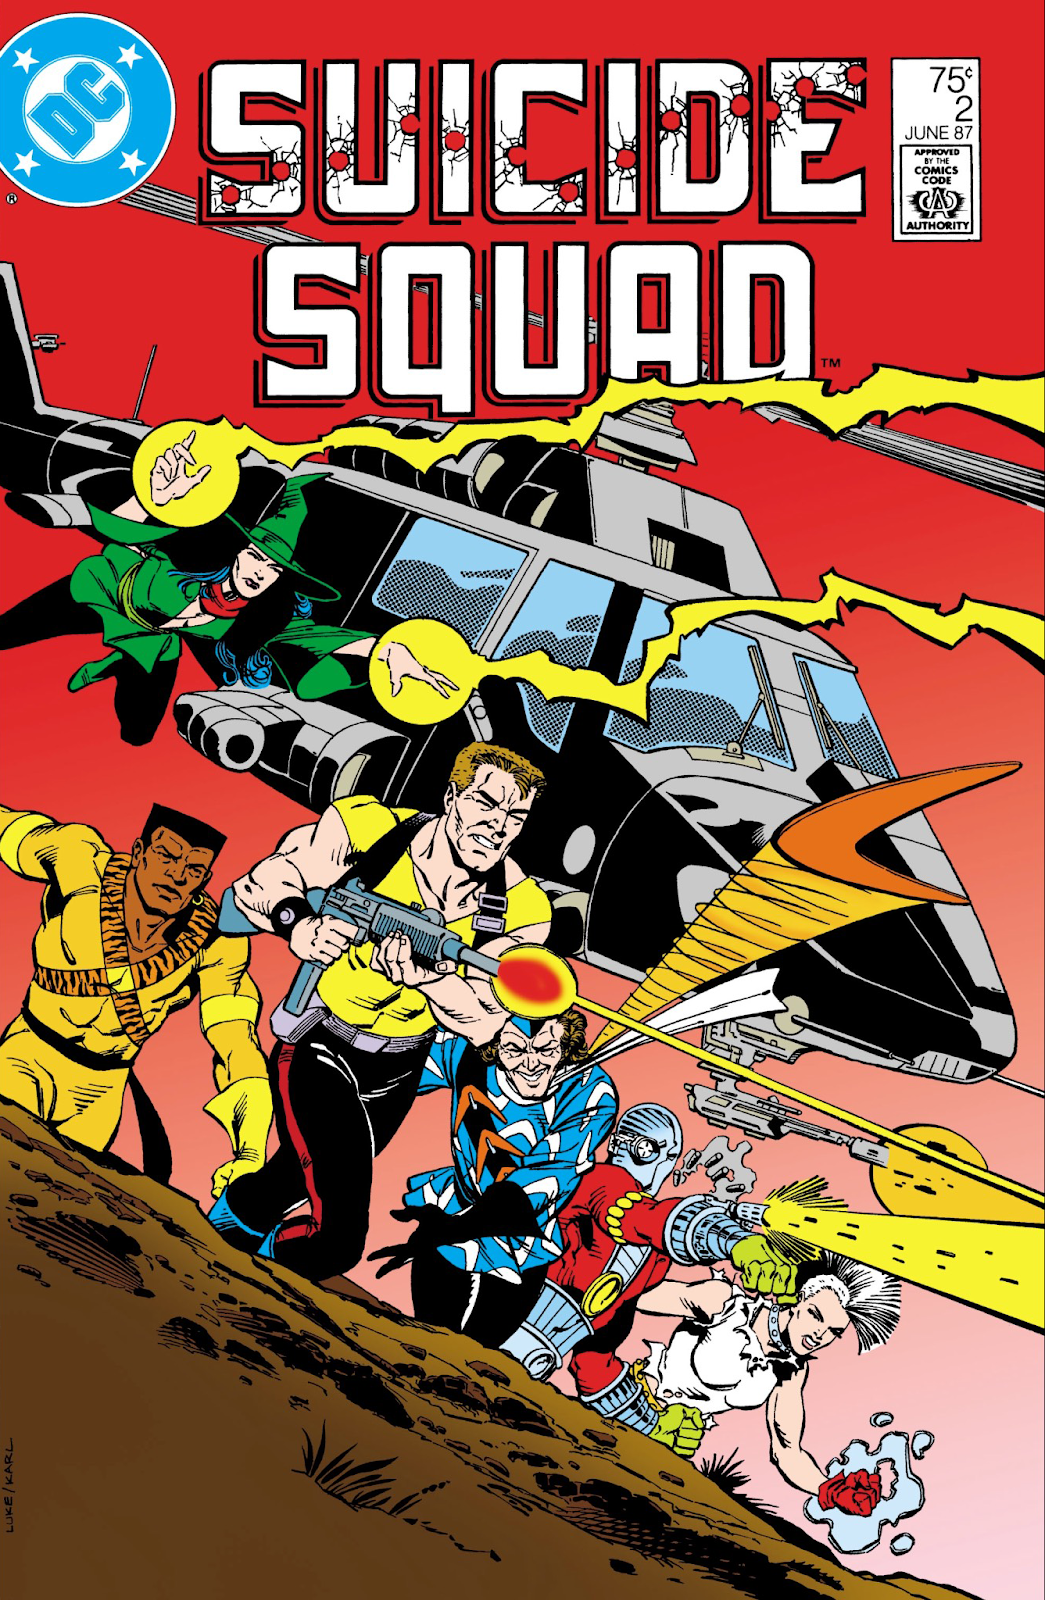 Suicide Squad #2 Review - Black Nerd Problems